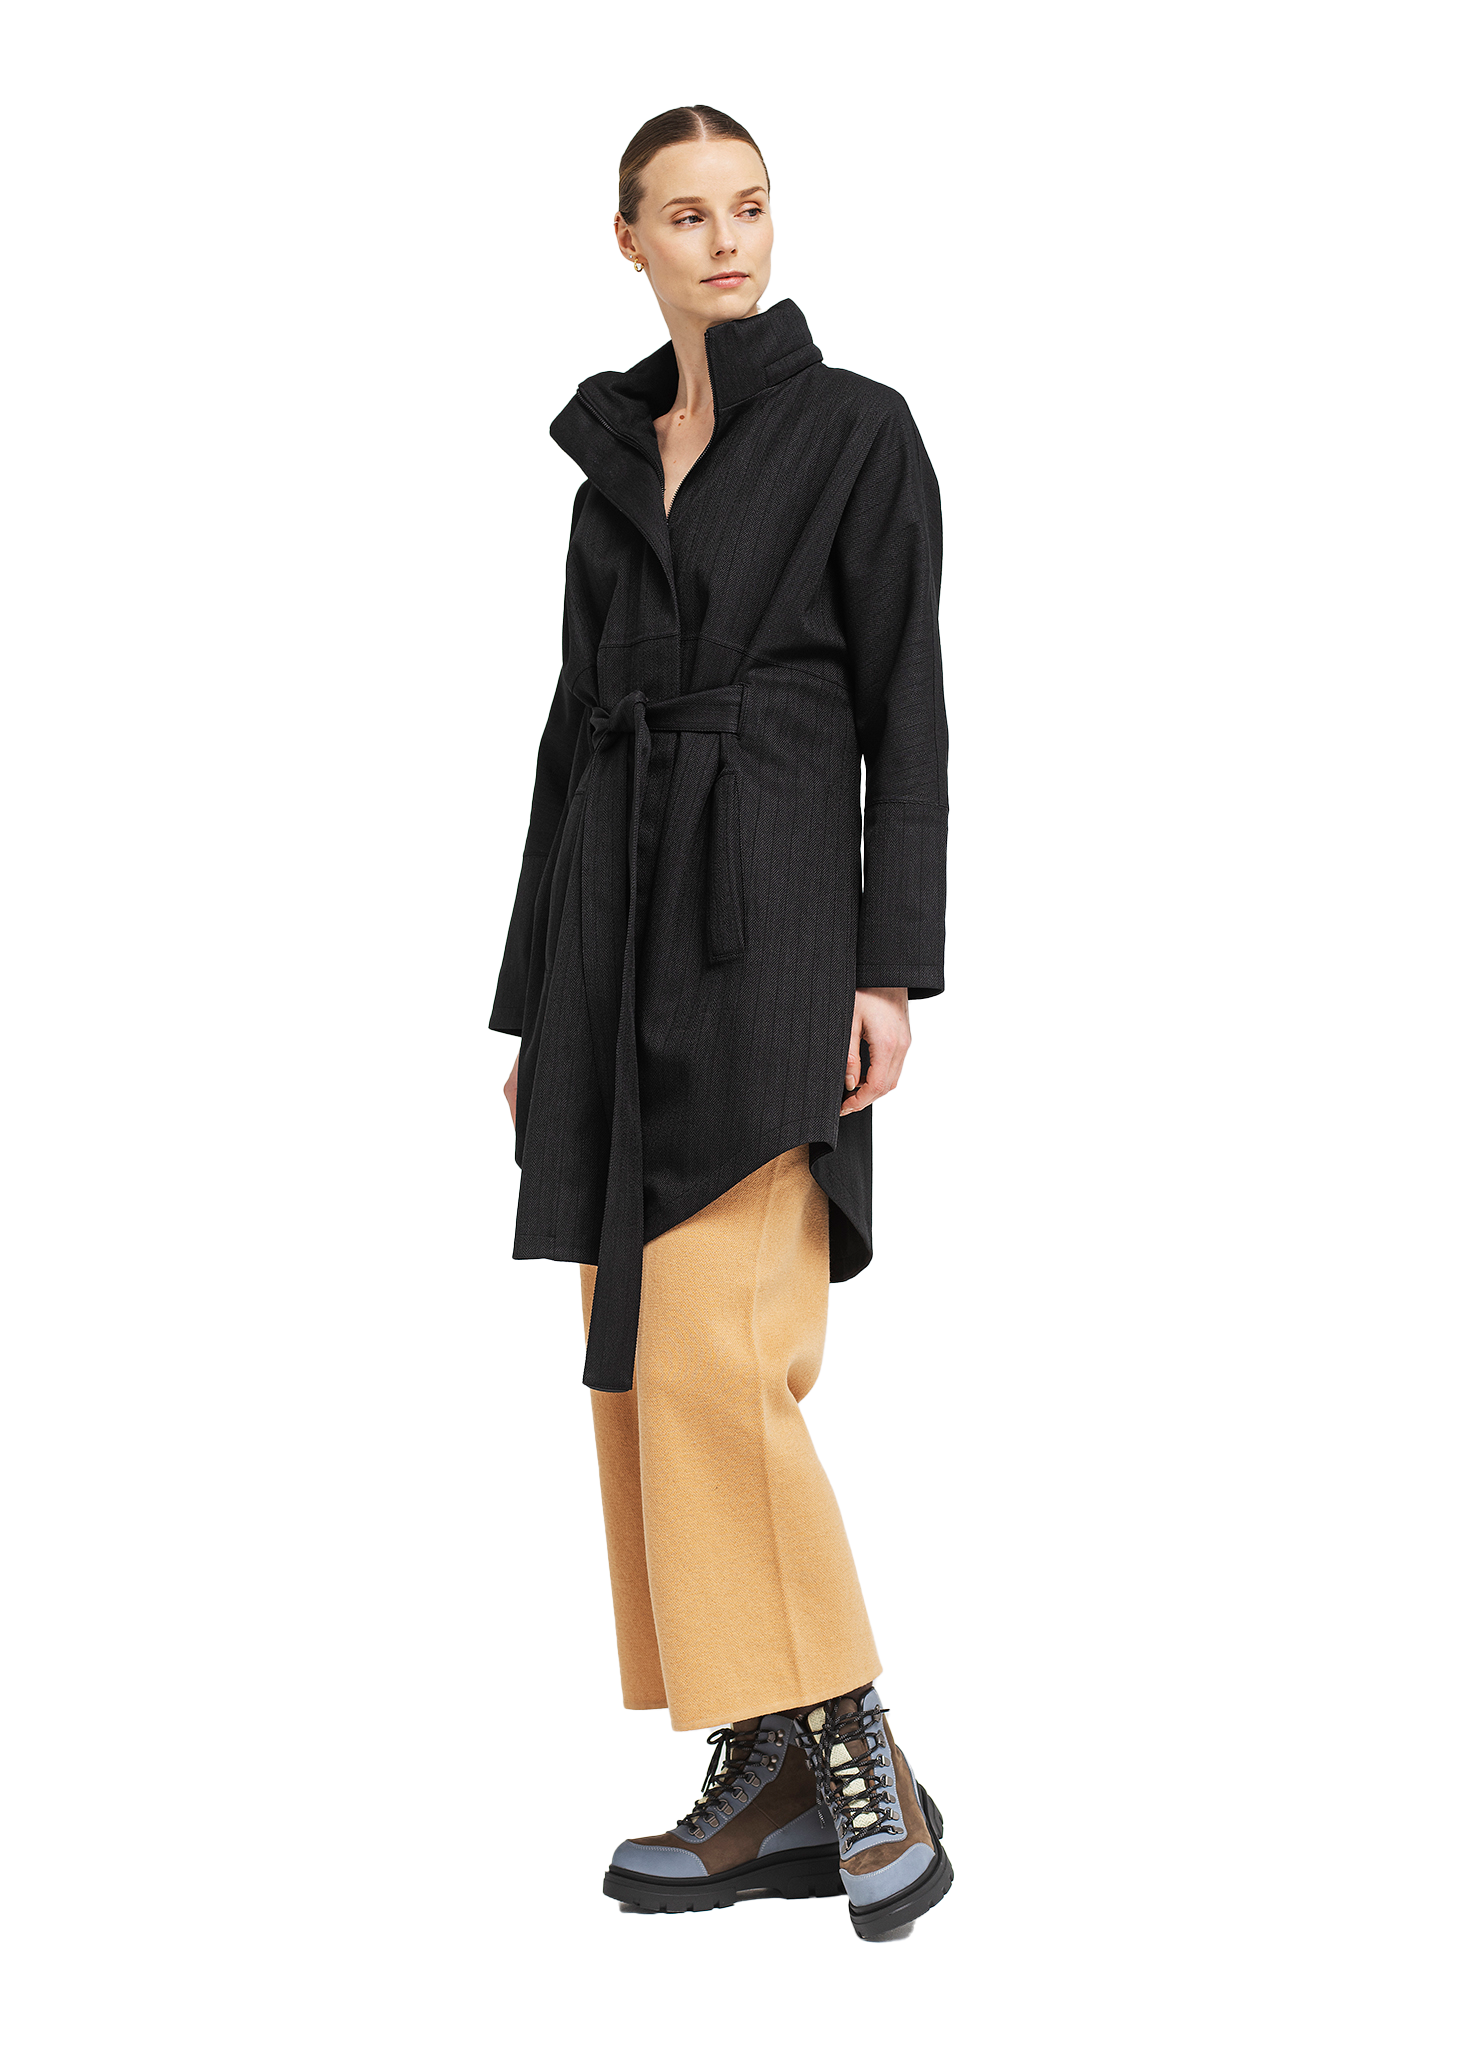 BRGN Bris Poncho Coats 097 Black Tweed